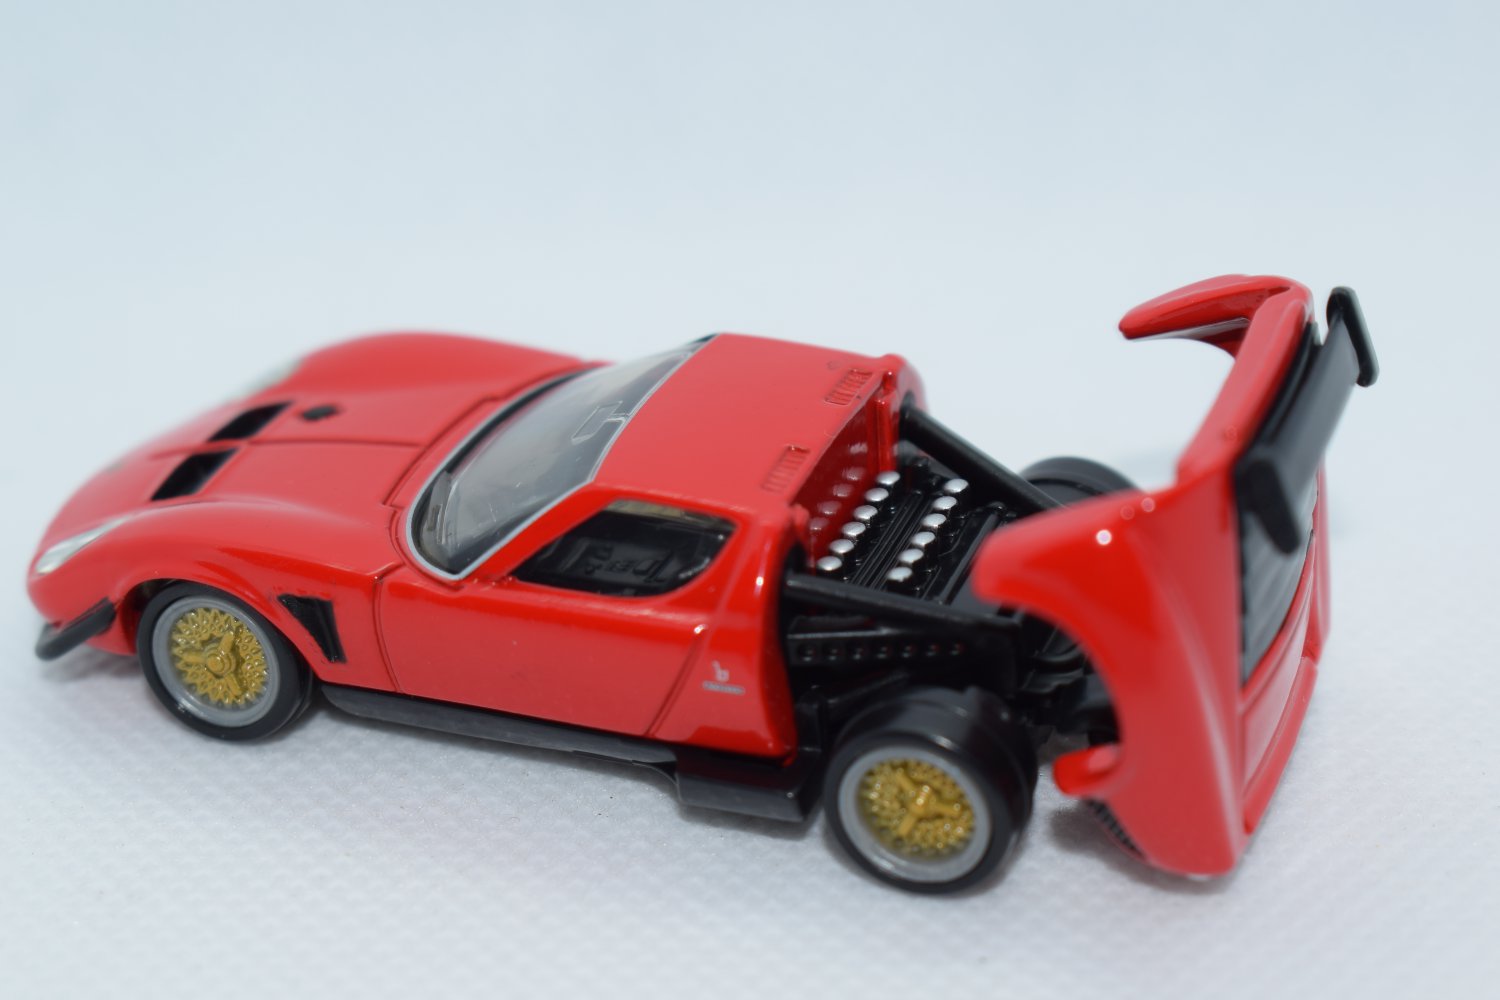 Tomica Premium Diecast Model Scale 1 64 05 Lamborghini